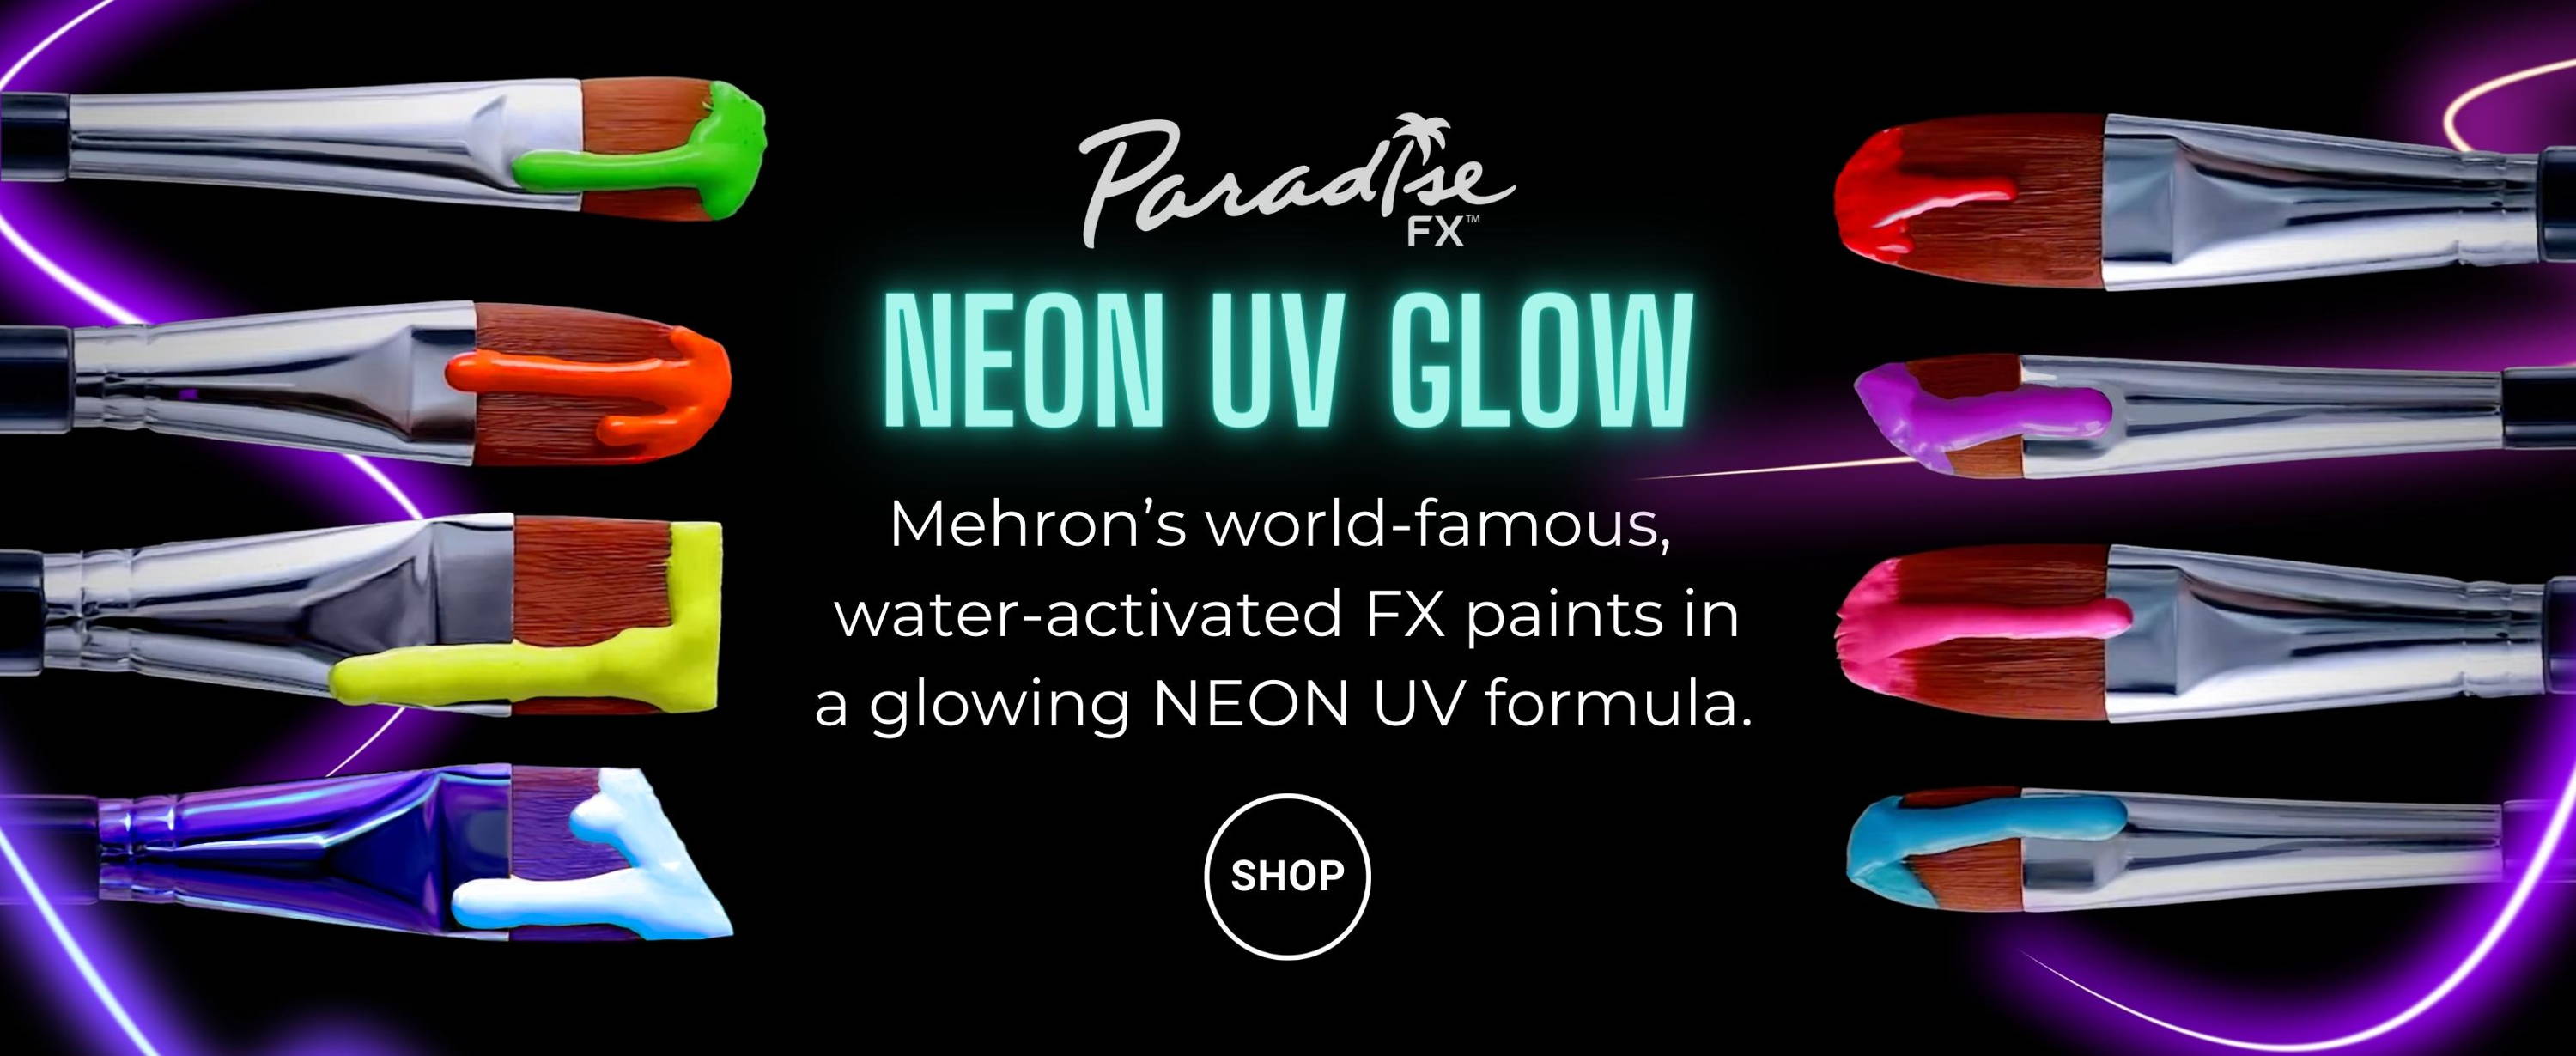 Paradise FX Neon UV Glow